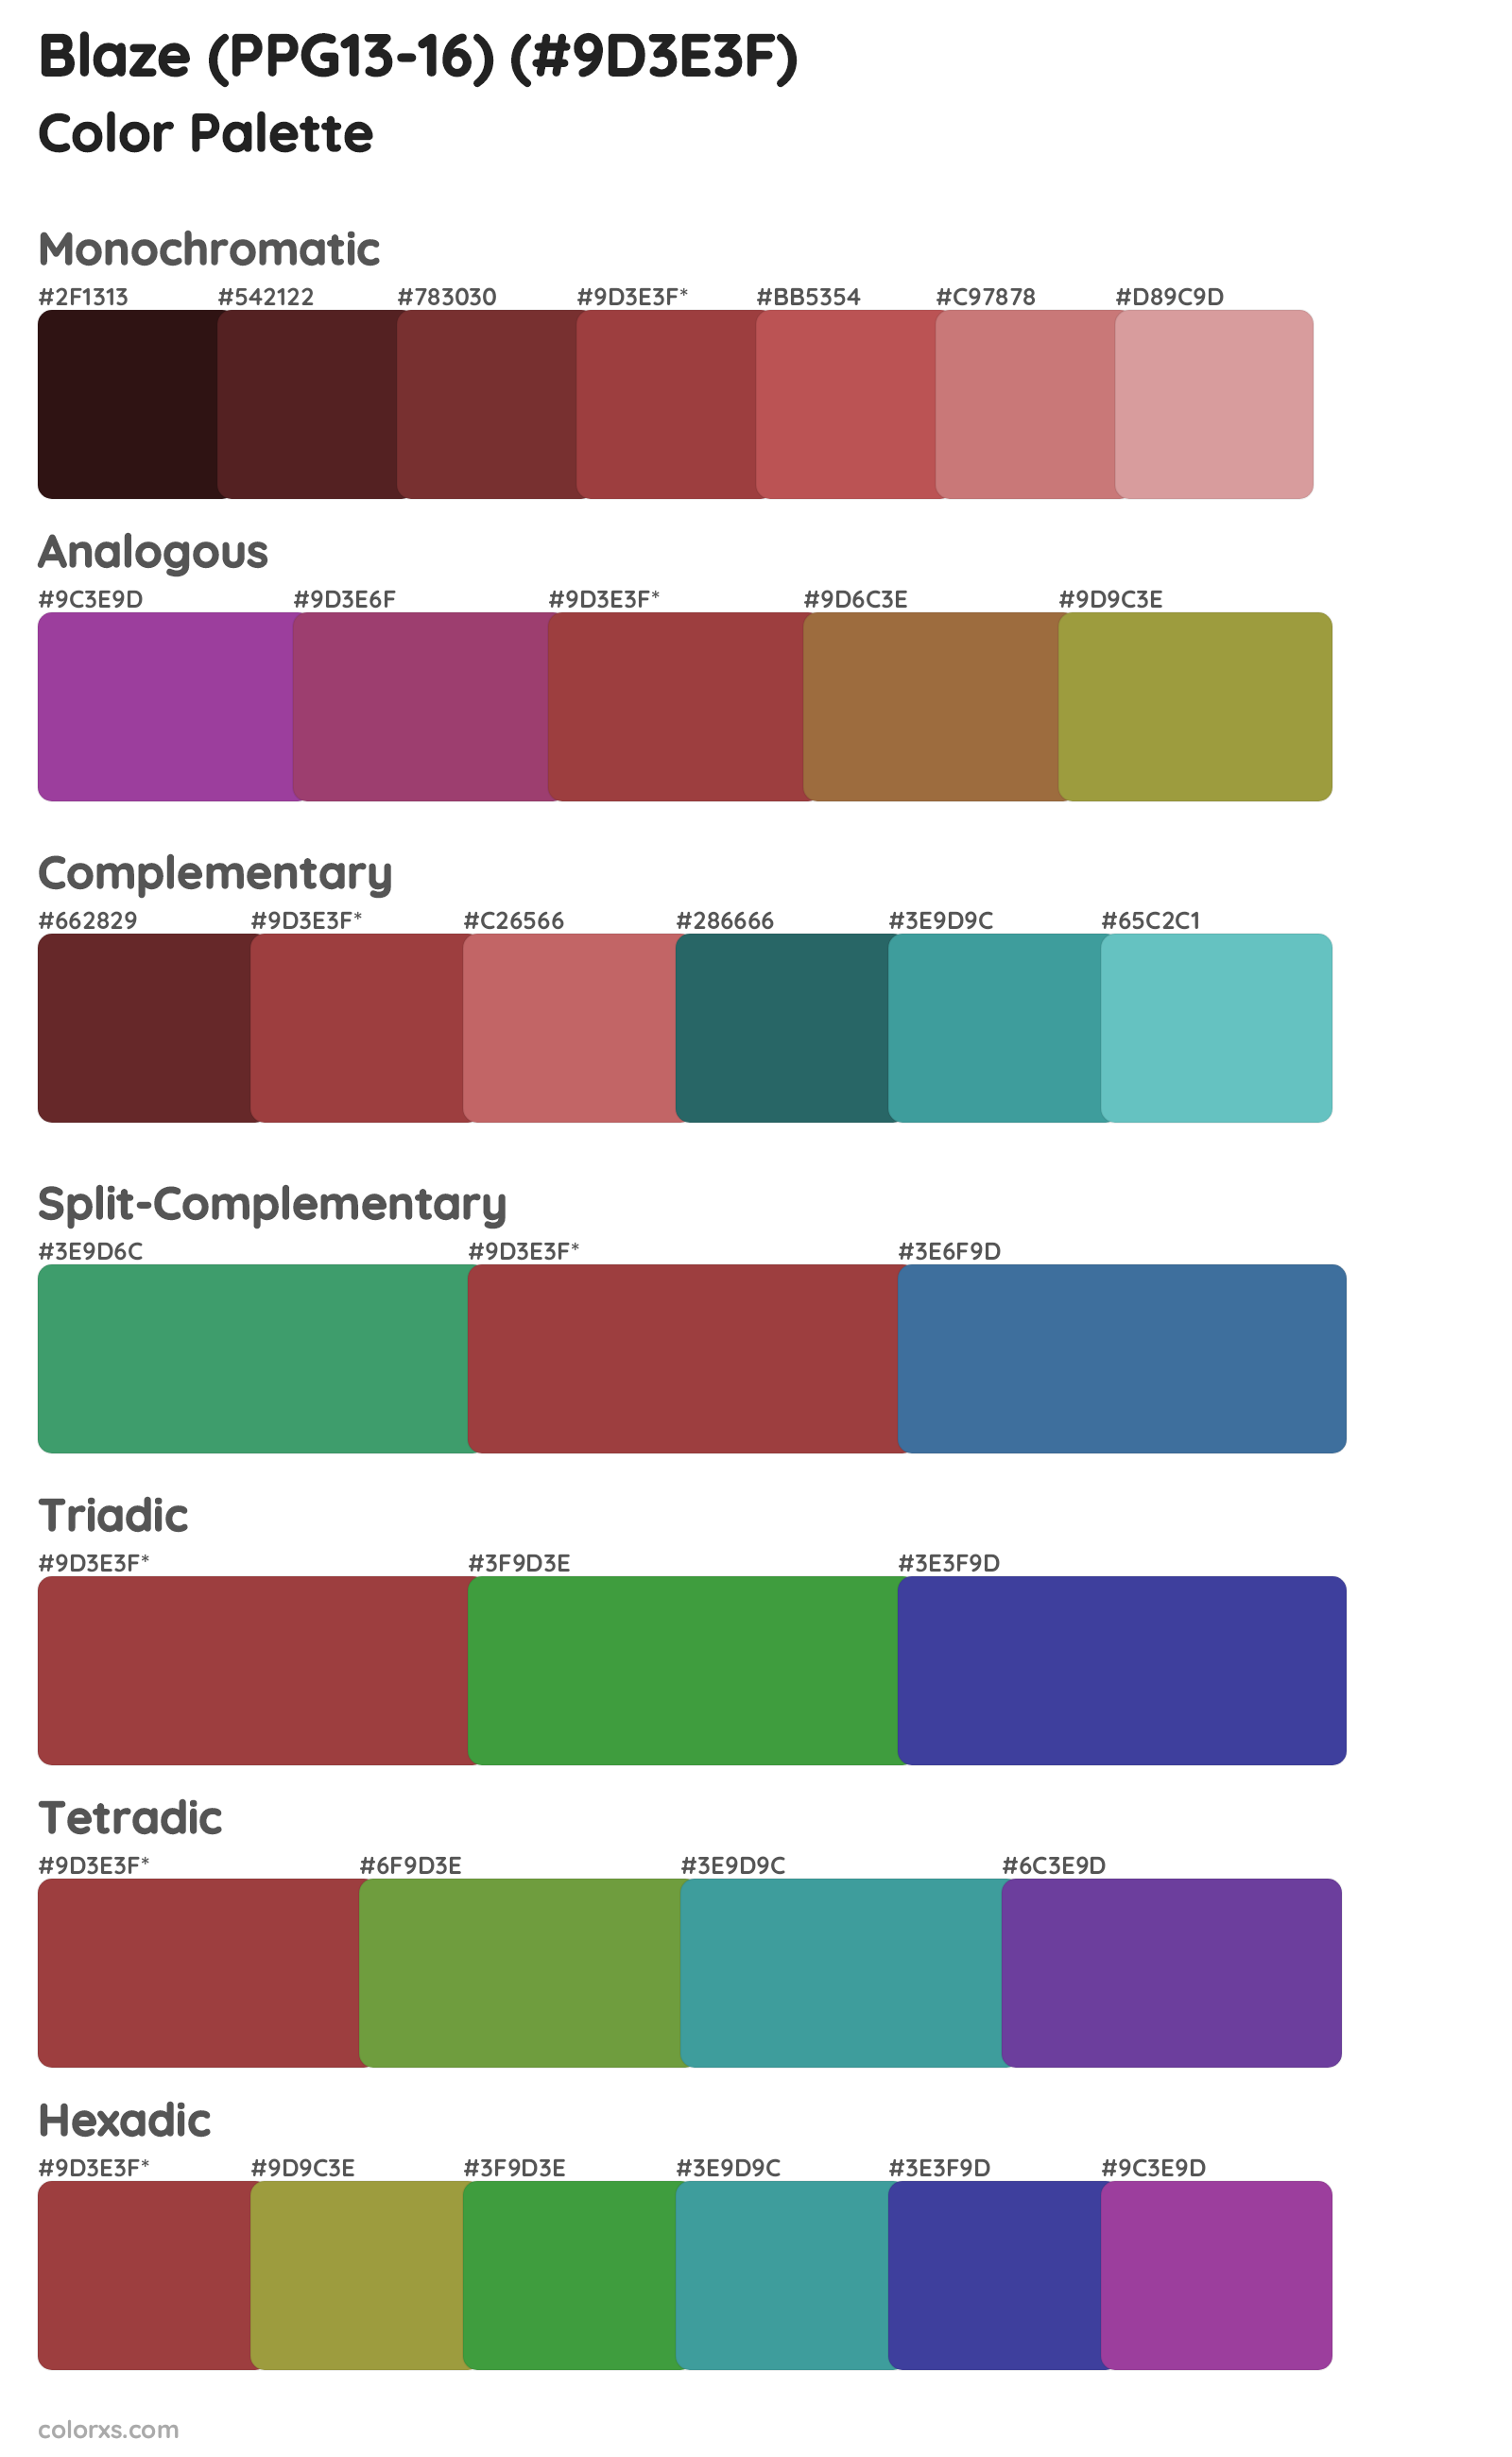 Blaze (PPG13-16) Color Scheme Palettes